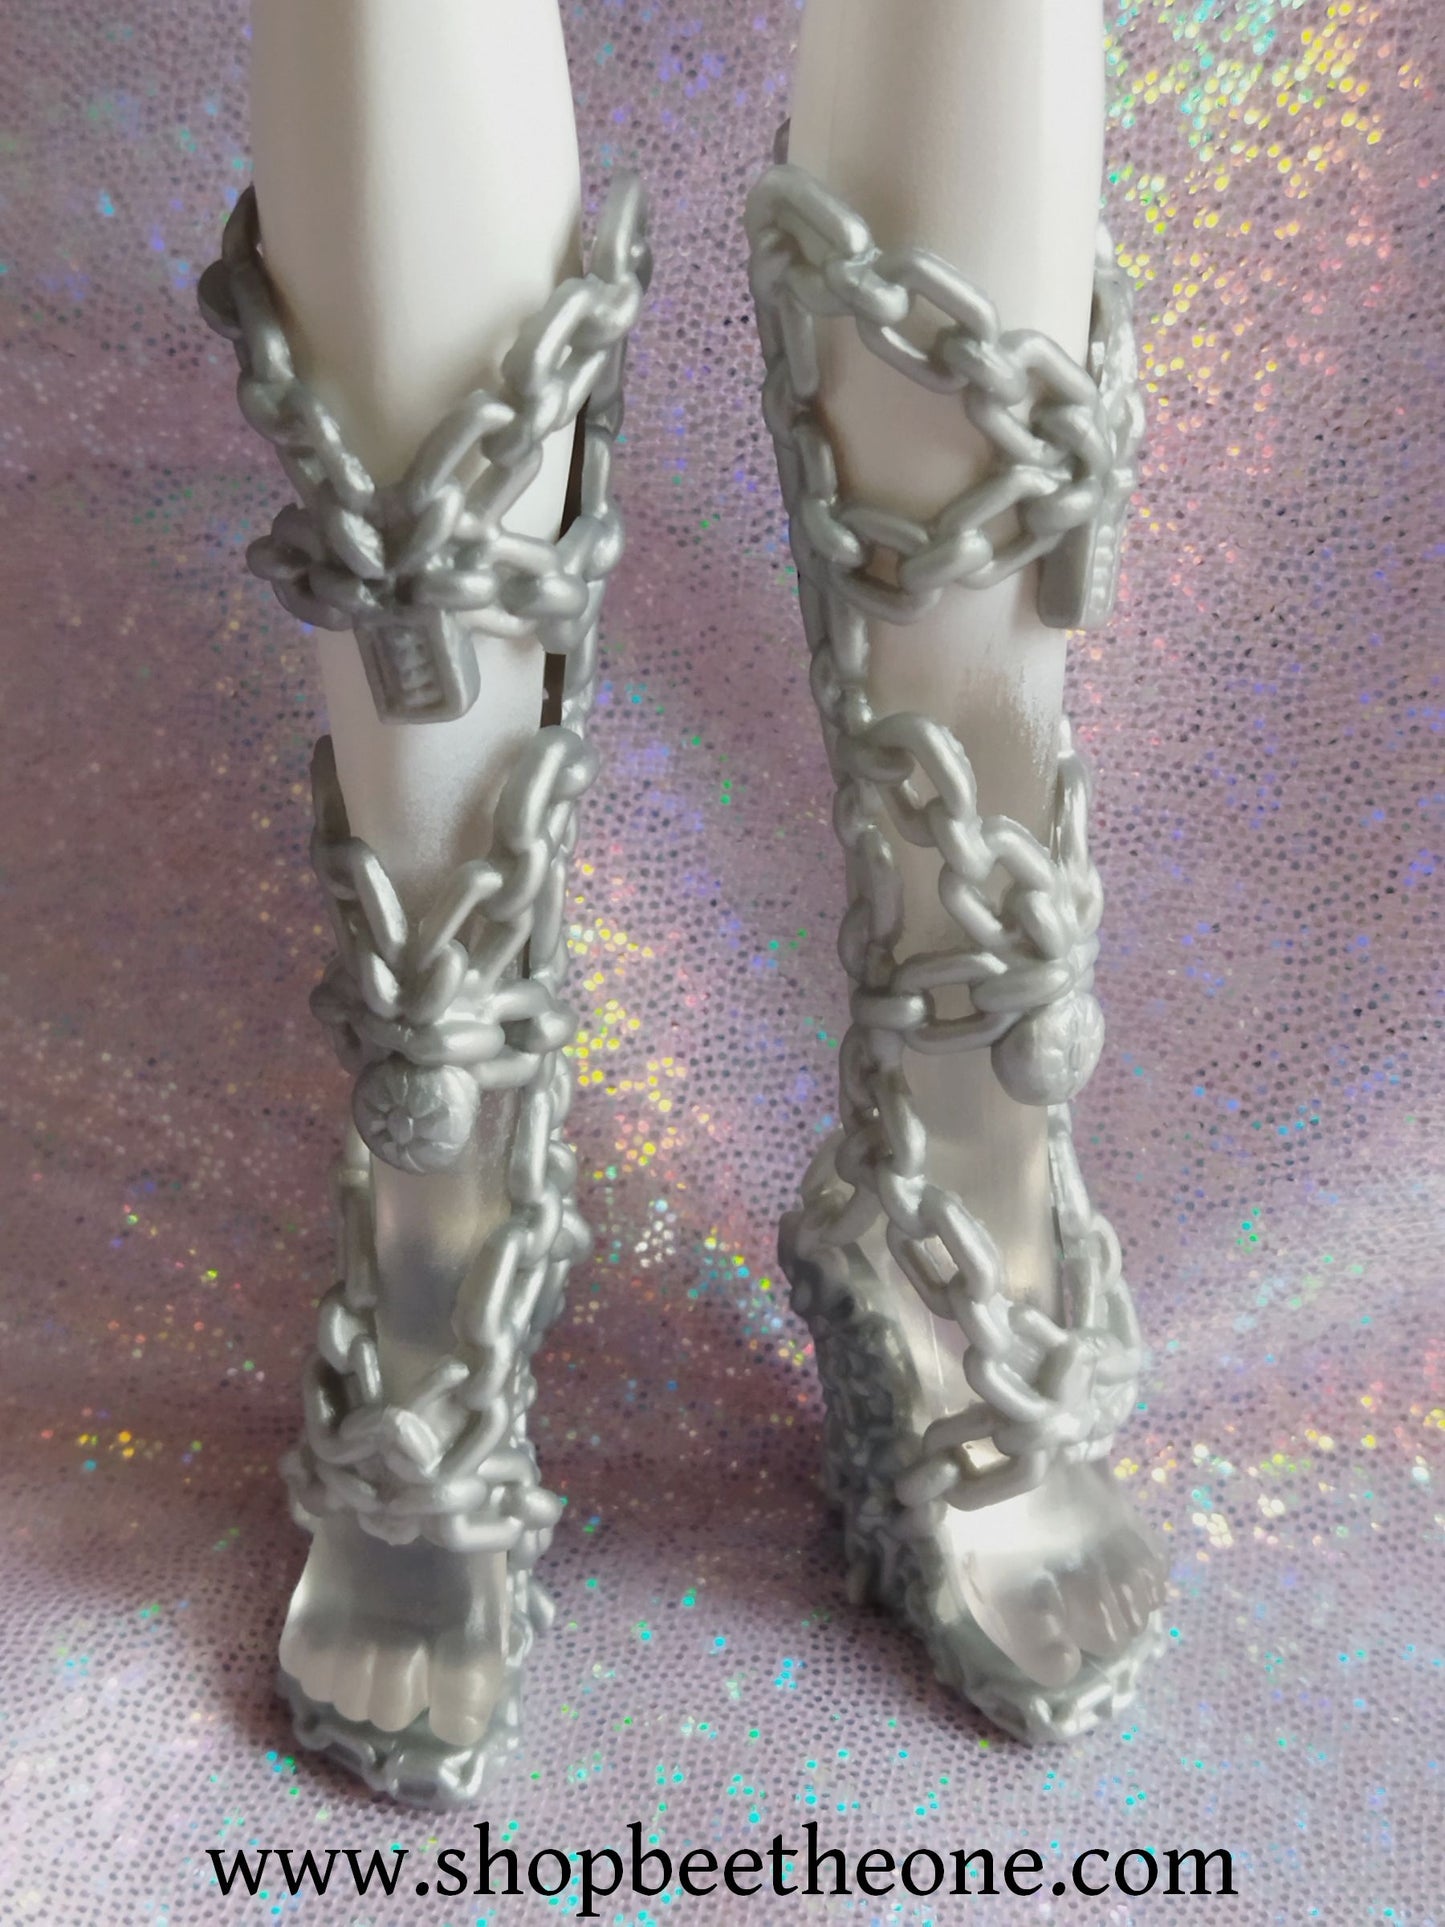 Spectra Vondergeist Haunted Getting Ghostly - Mattel 2014 - Chaussures